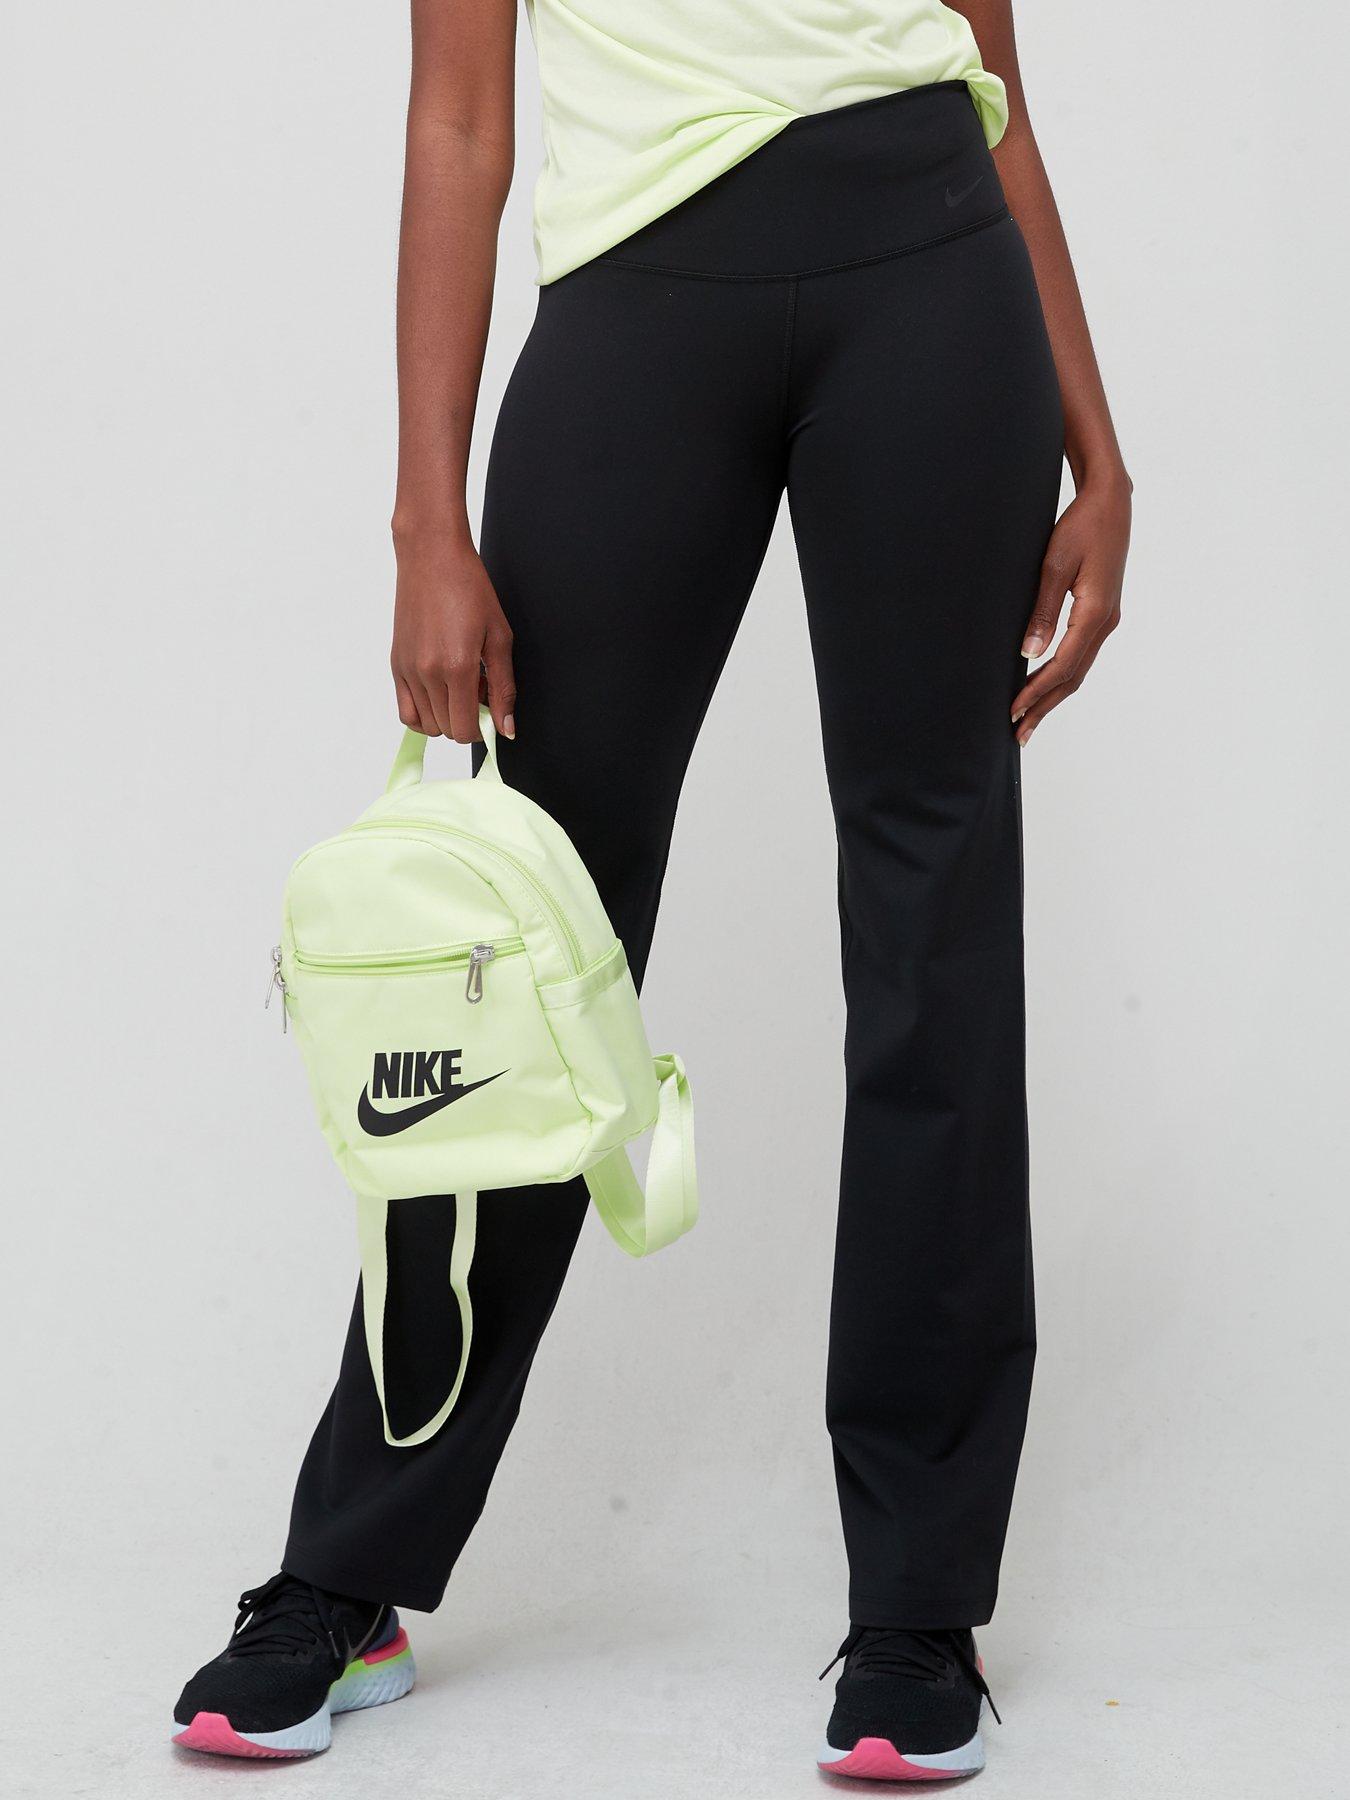 Nike Women's Spring Heritage Knit Pant